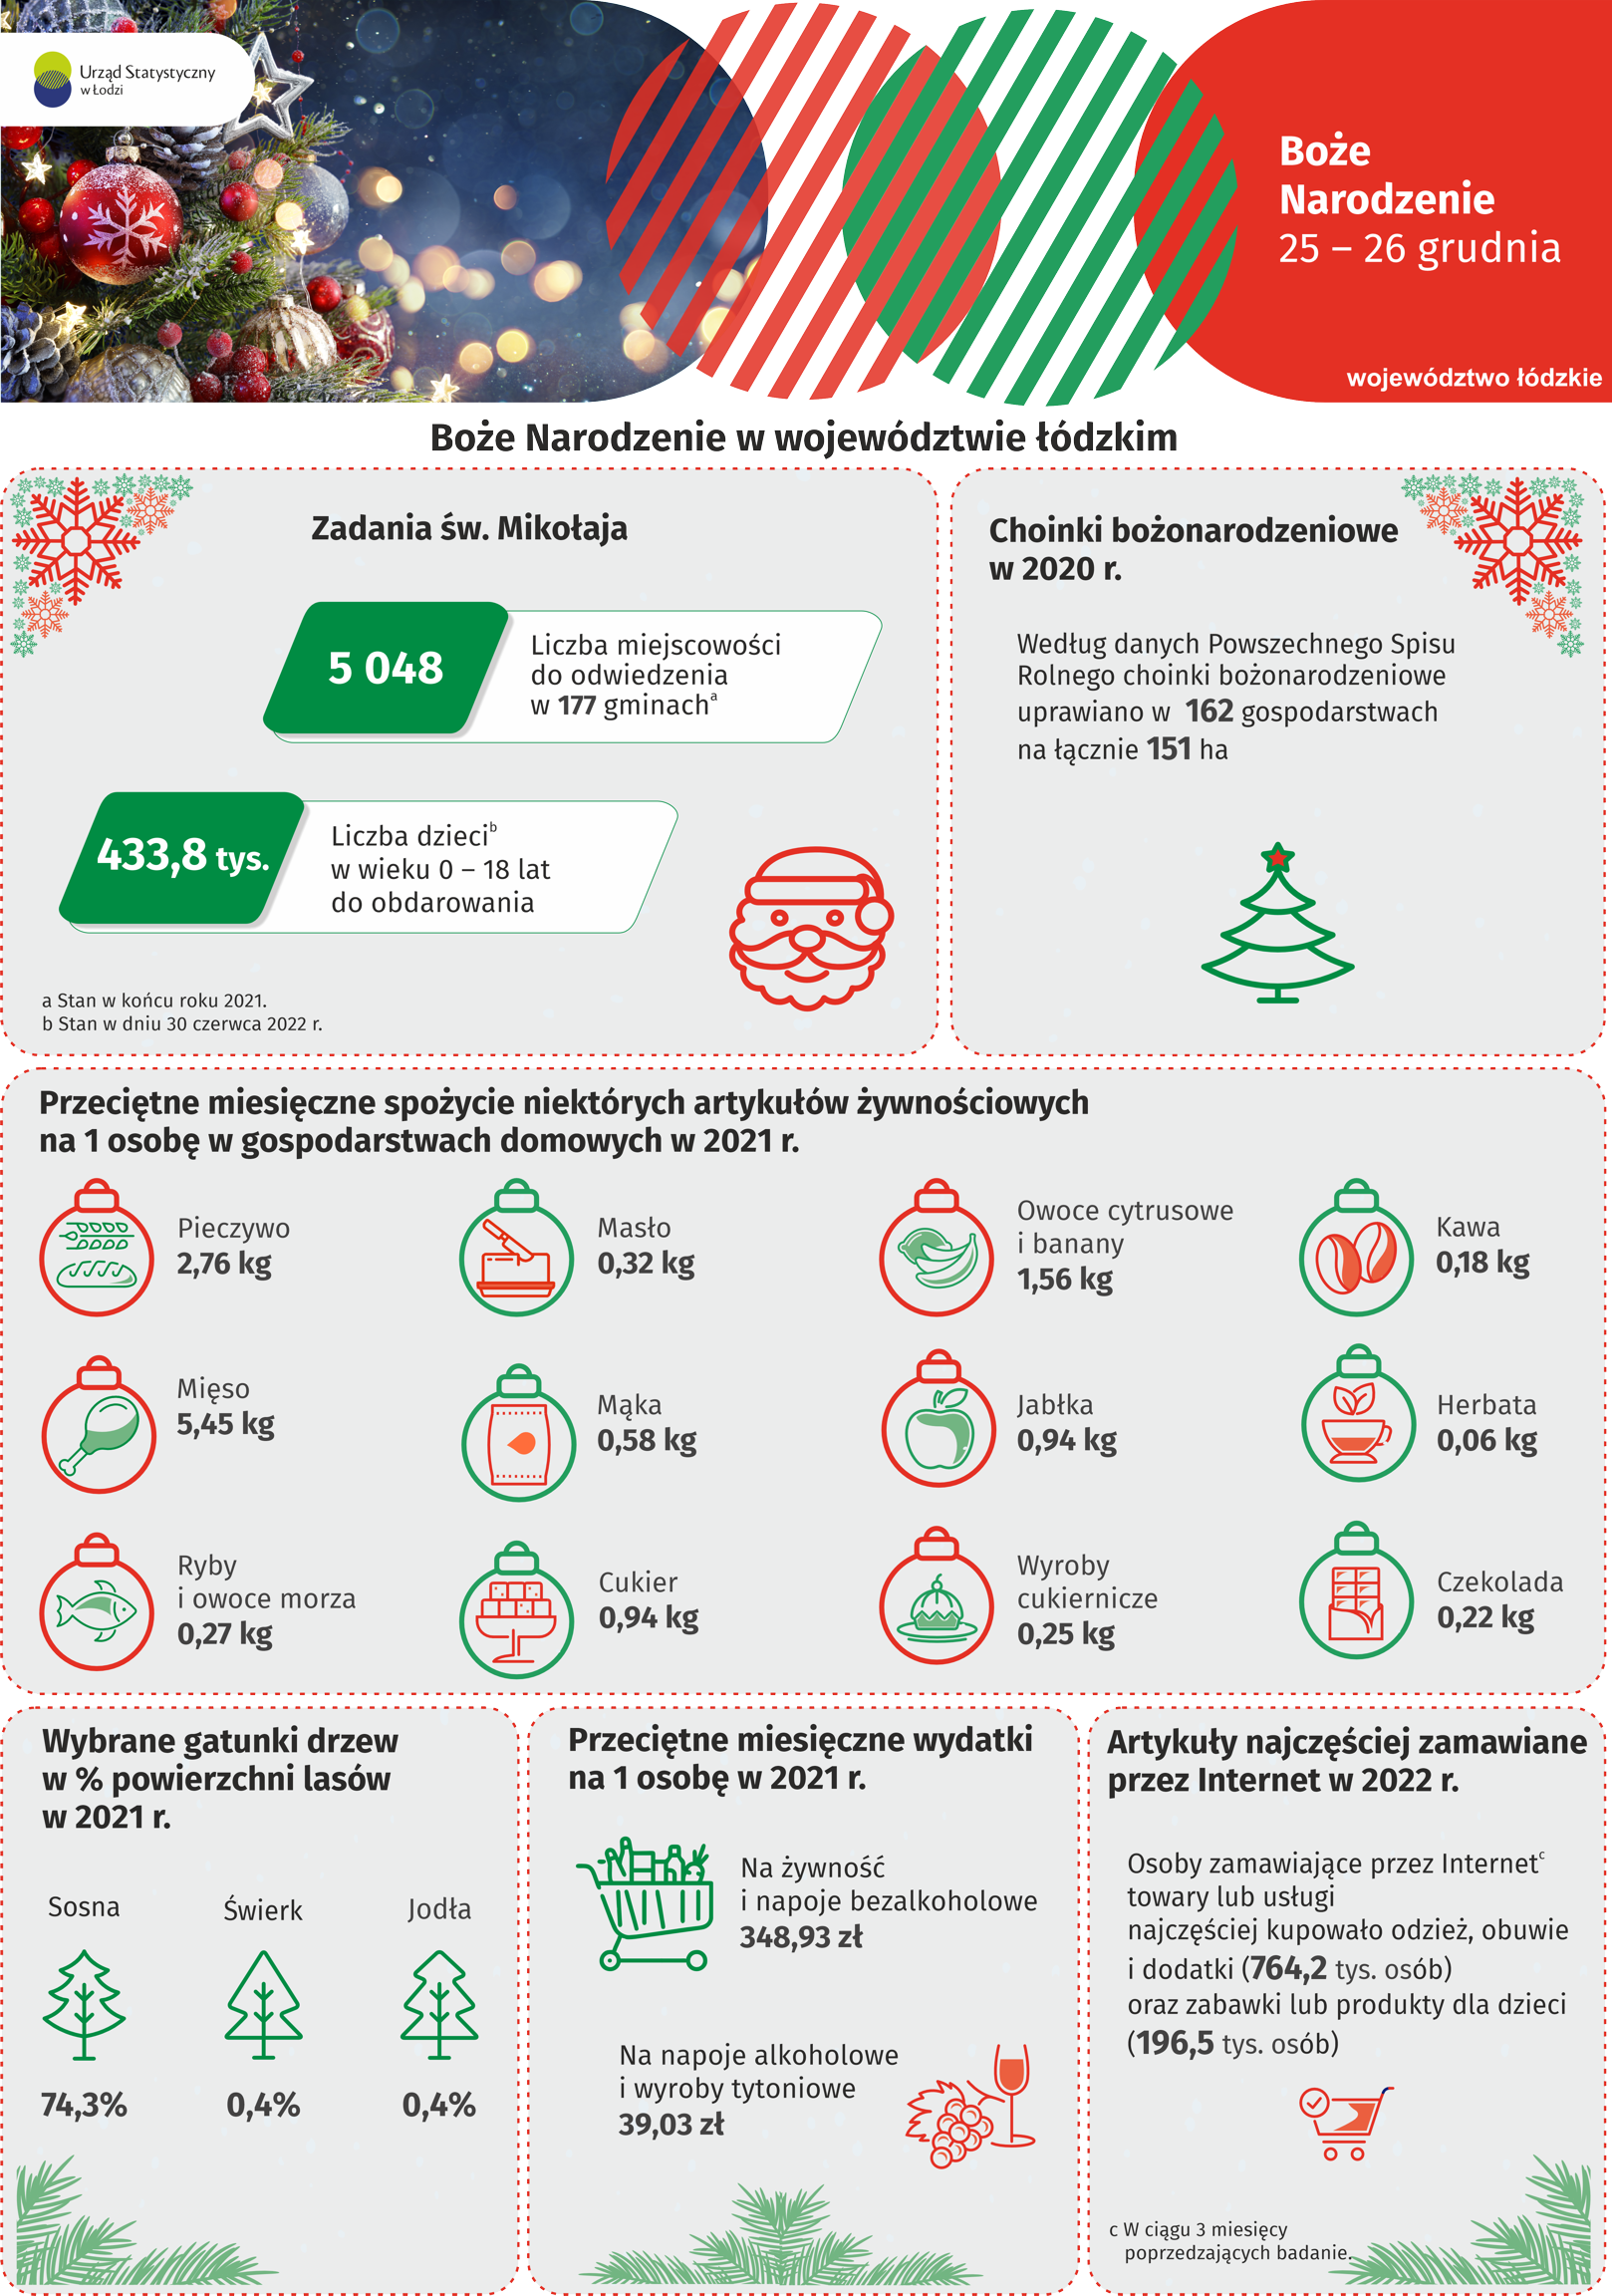 Infografika z okazji Bożego Narodzenia przedstawia dane dotyczące województwa łódzkiego